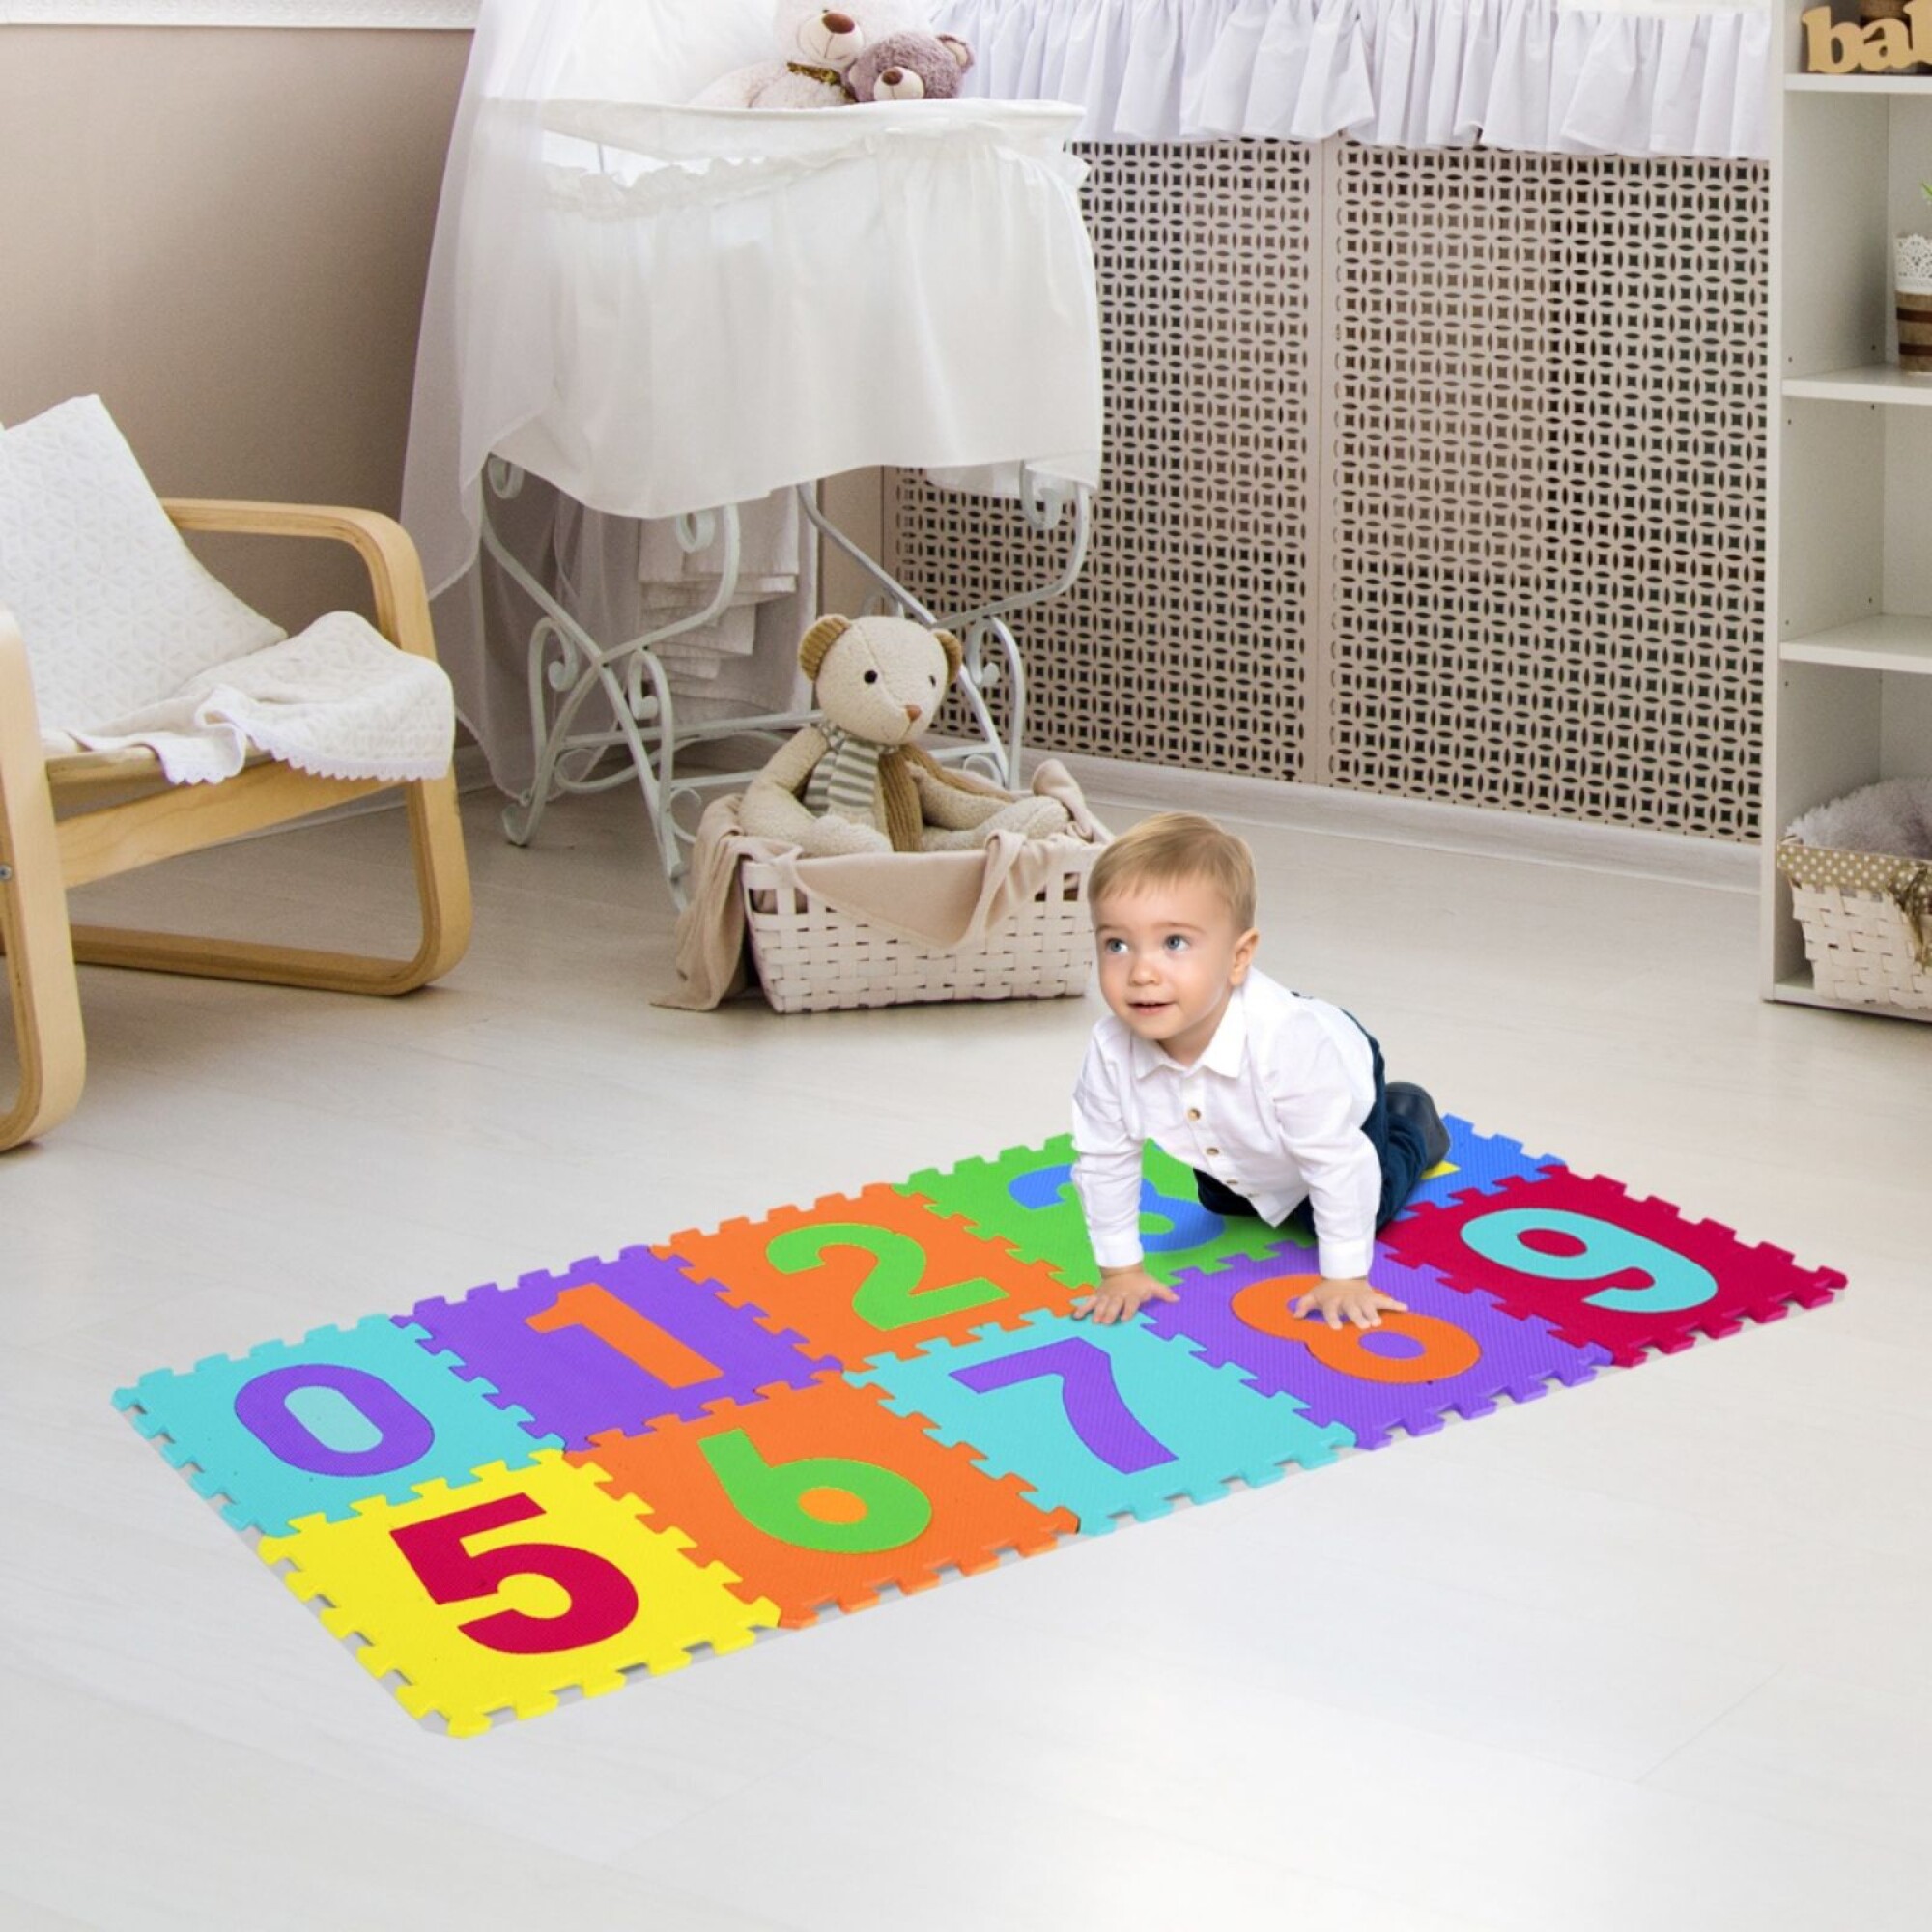 Las alfombras en las habitaciones de bebés y niños